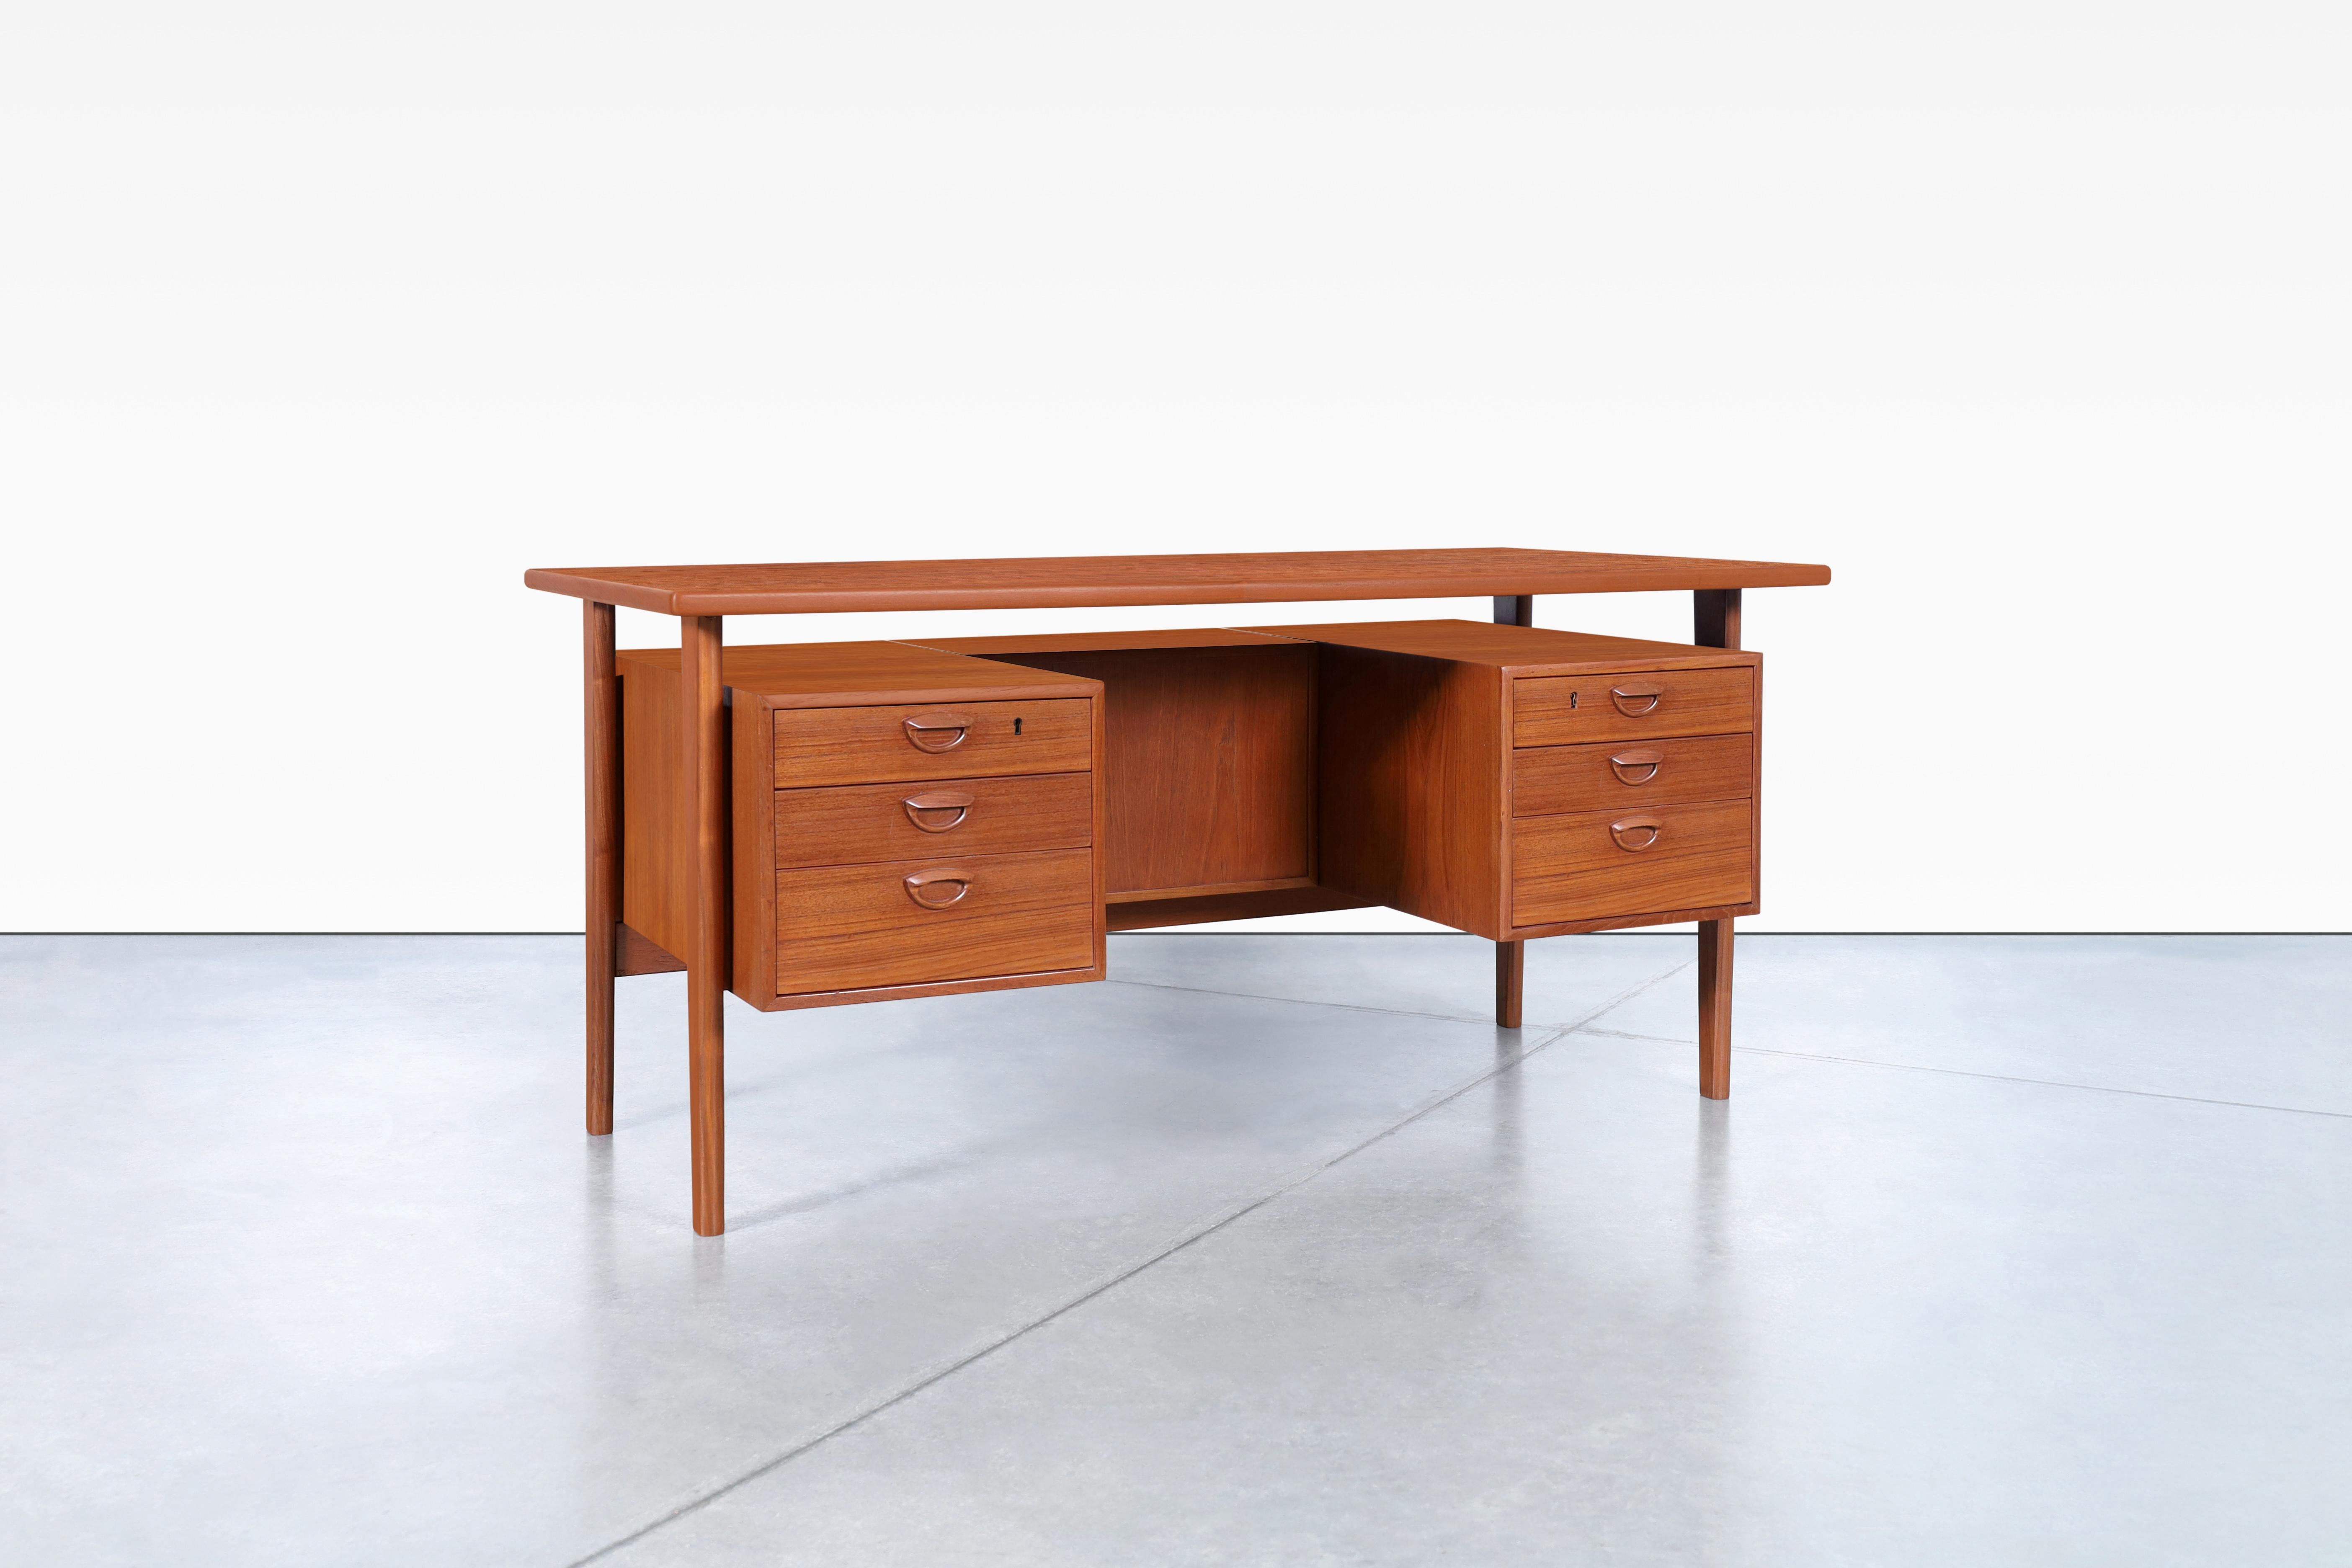 Atemberaubender moderner dänischer Teakholz-Schreibtisch, entworfen von dem berühmten Tischler Kai Kristiansen für Feldballes Møbelfrabrik in Dänemark, ca. 1960er Jahre. Der Schreibtisch FM60 ist ein begehrtes skandinavisches Design, das die